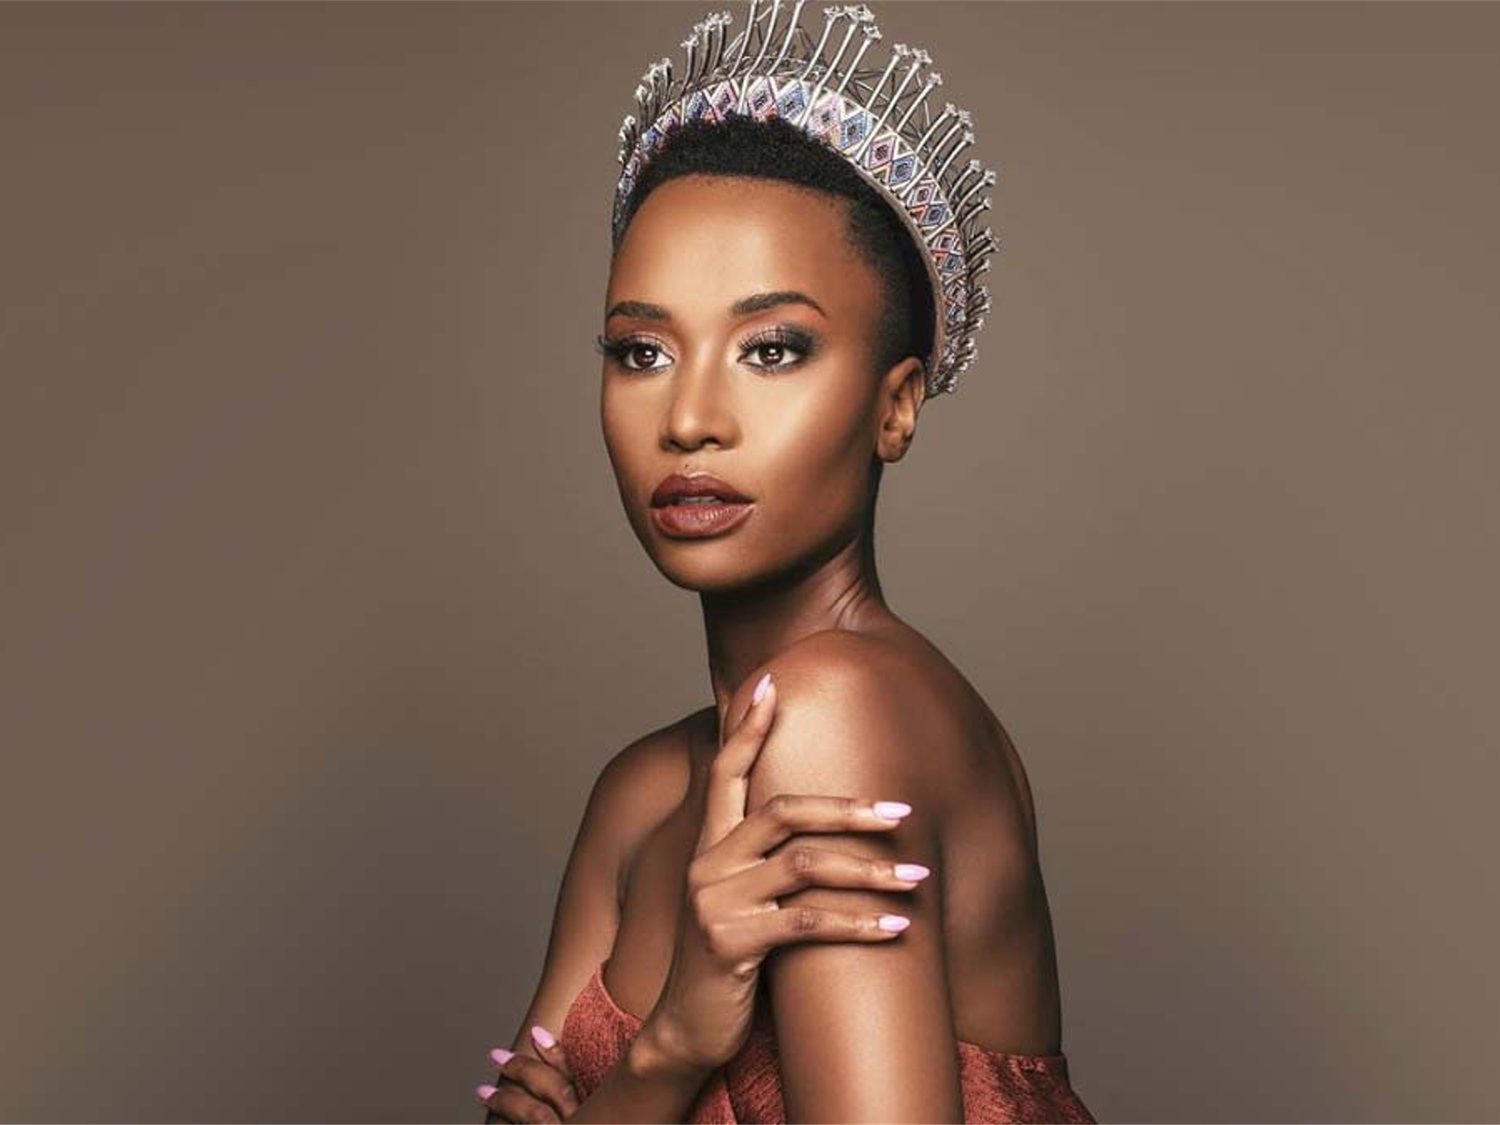 El mensaje feminista de la sudafricana Zozibini Tunzi al ser coronada Miss Universo 2019